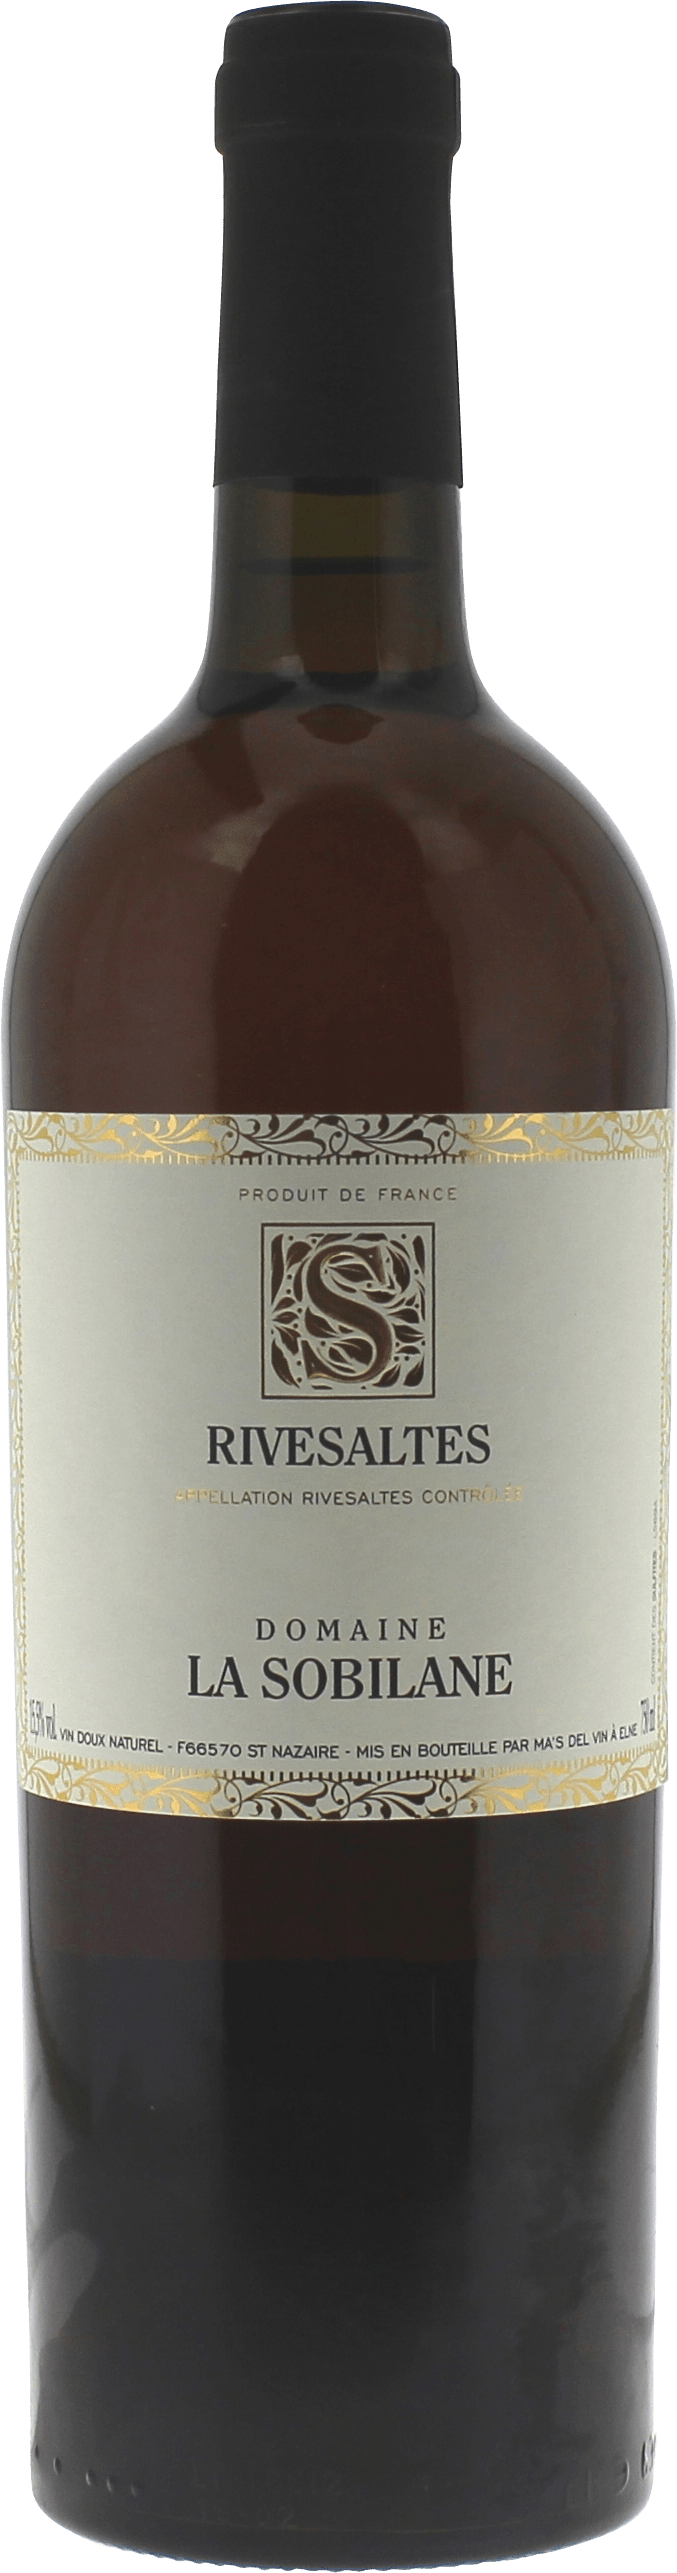 Rivesaltes domaine la sobilane 1955 Vin doux naturel Rivesaltes, Vin doux naturel